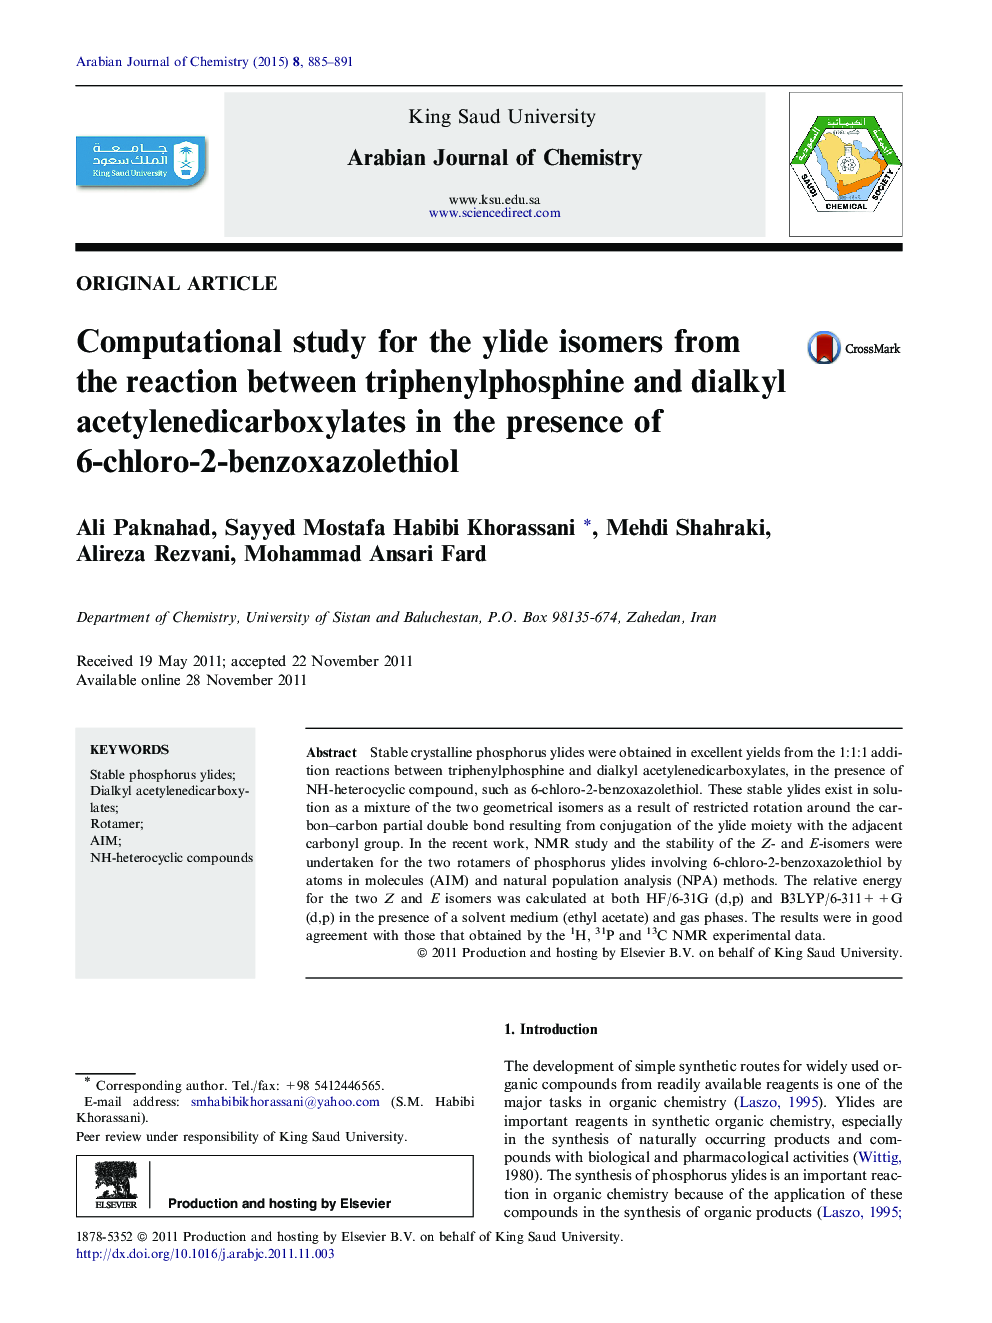 مطالعه محاسباتی برای ایزومرهای ایلید از واکنش میان تریبویل فسفین و دی آلکیل استیل اندیکاربوکسیلات ها در حضور 6-کلرو-2-بنزوکسازولثیول 